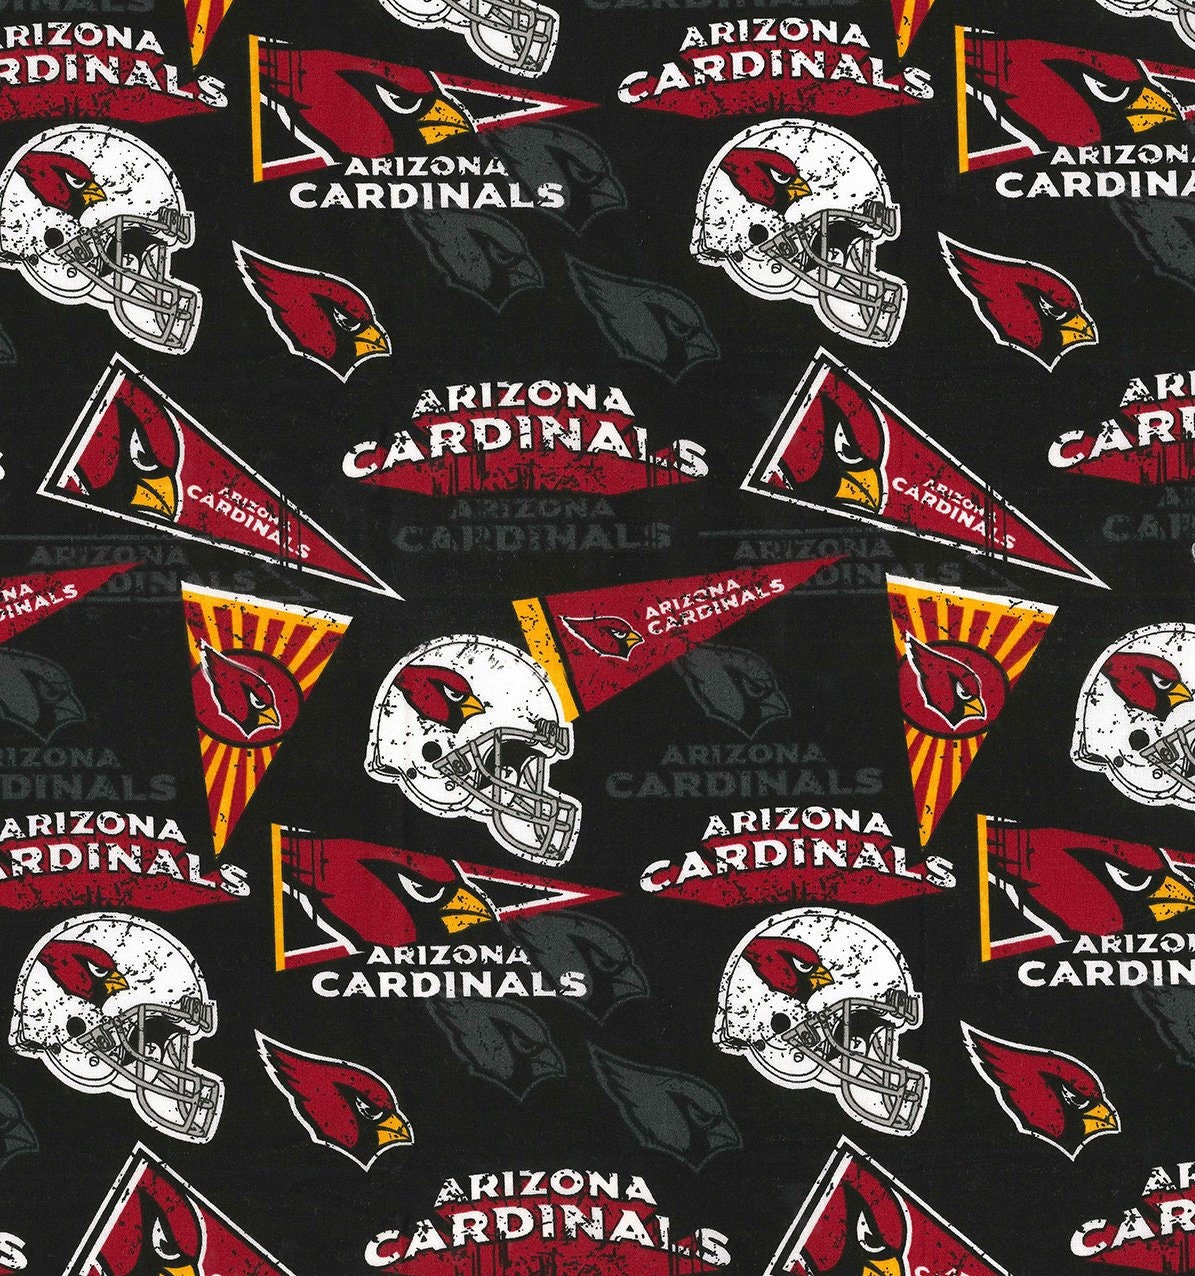 100+] Arizona Cardinals Wallpapers